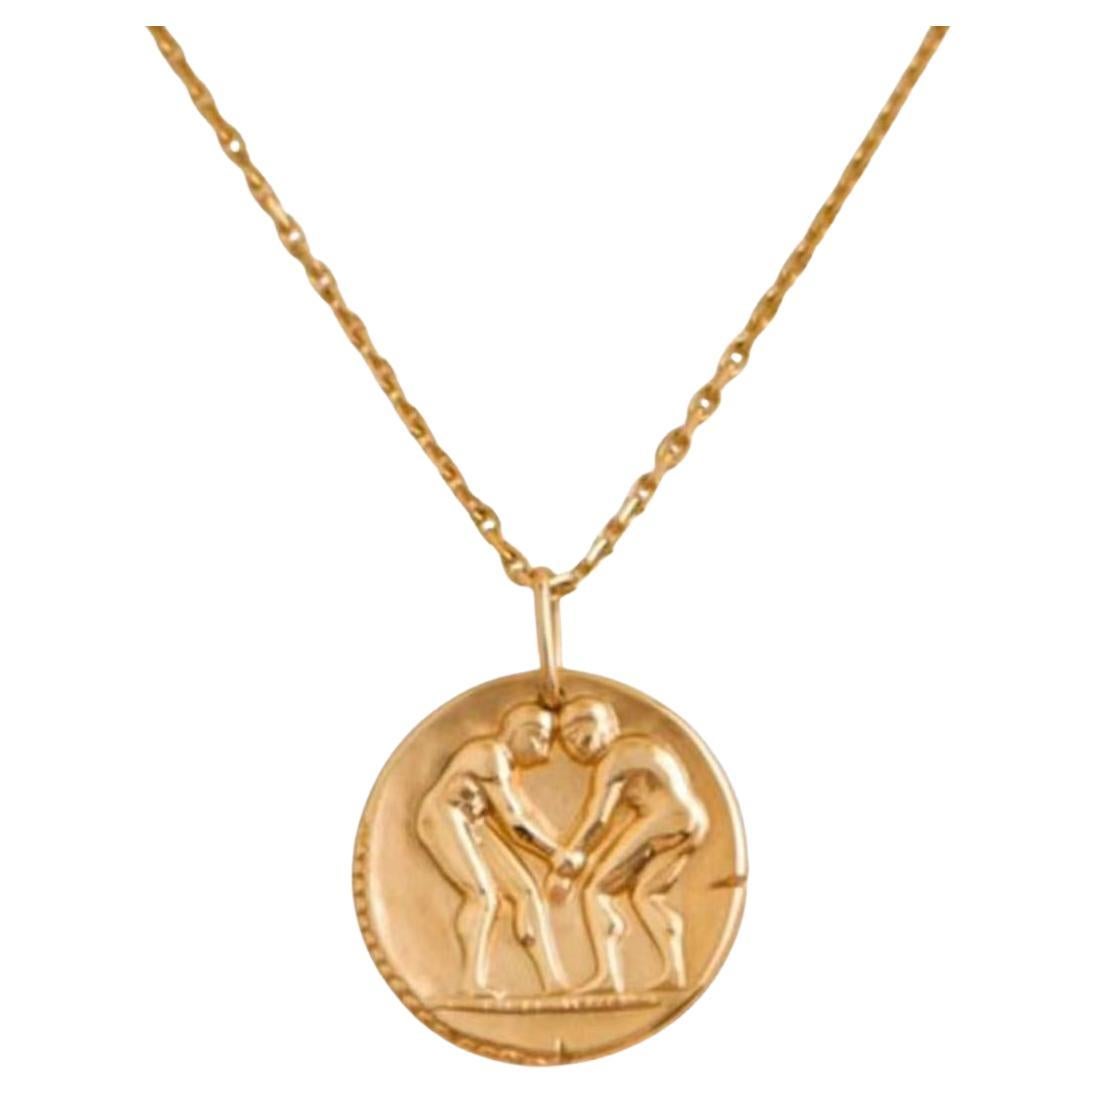 Van Cleef & Arpels Halskette mit Geminorum-Anhänger aus Gelbgold mit Tierkreiszeichen-Medaille